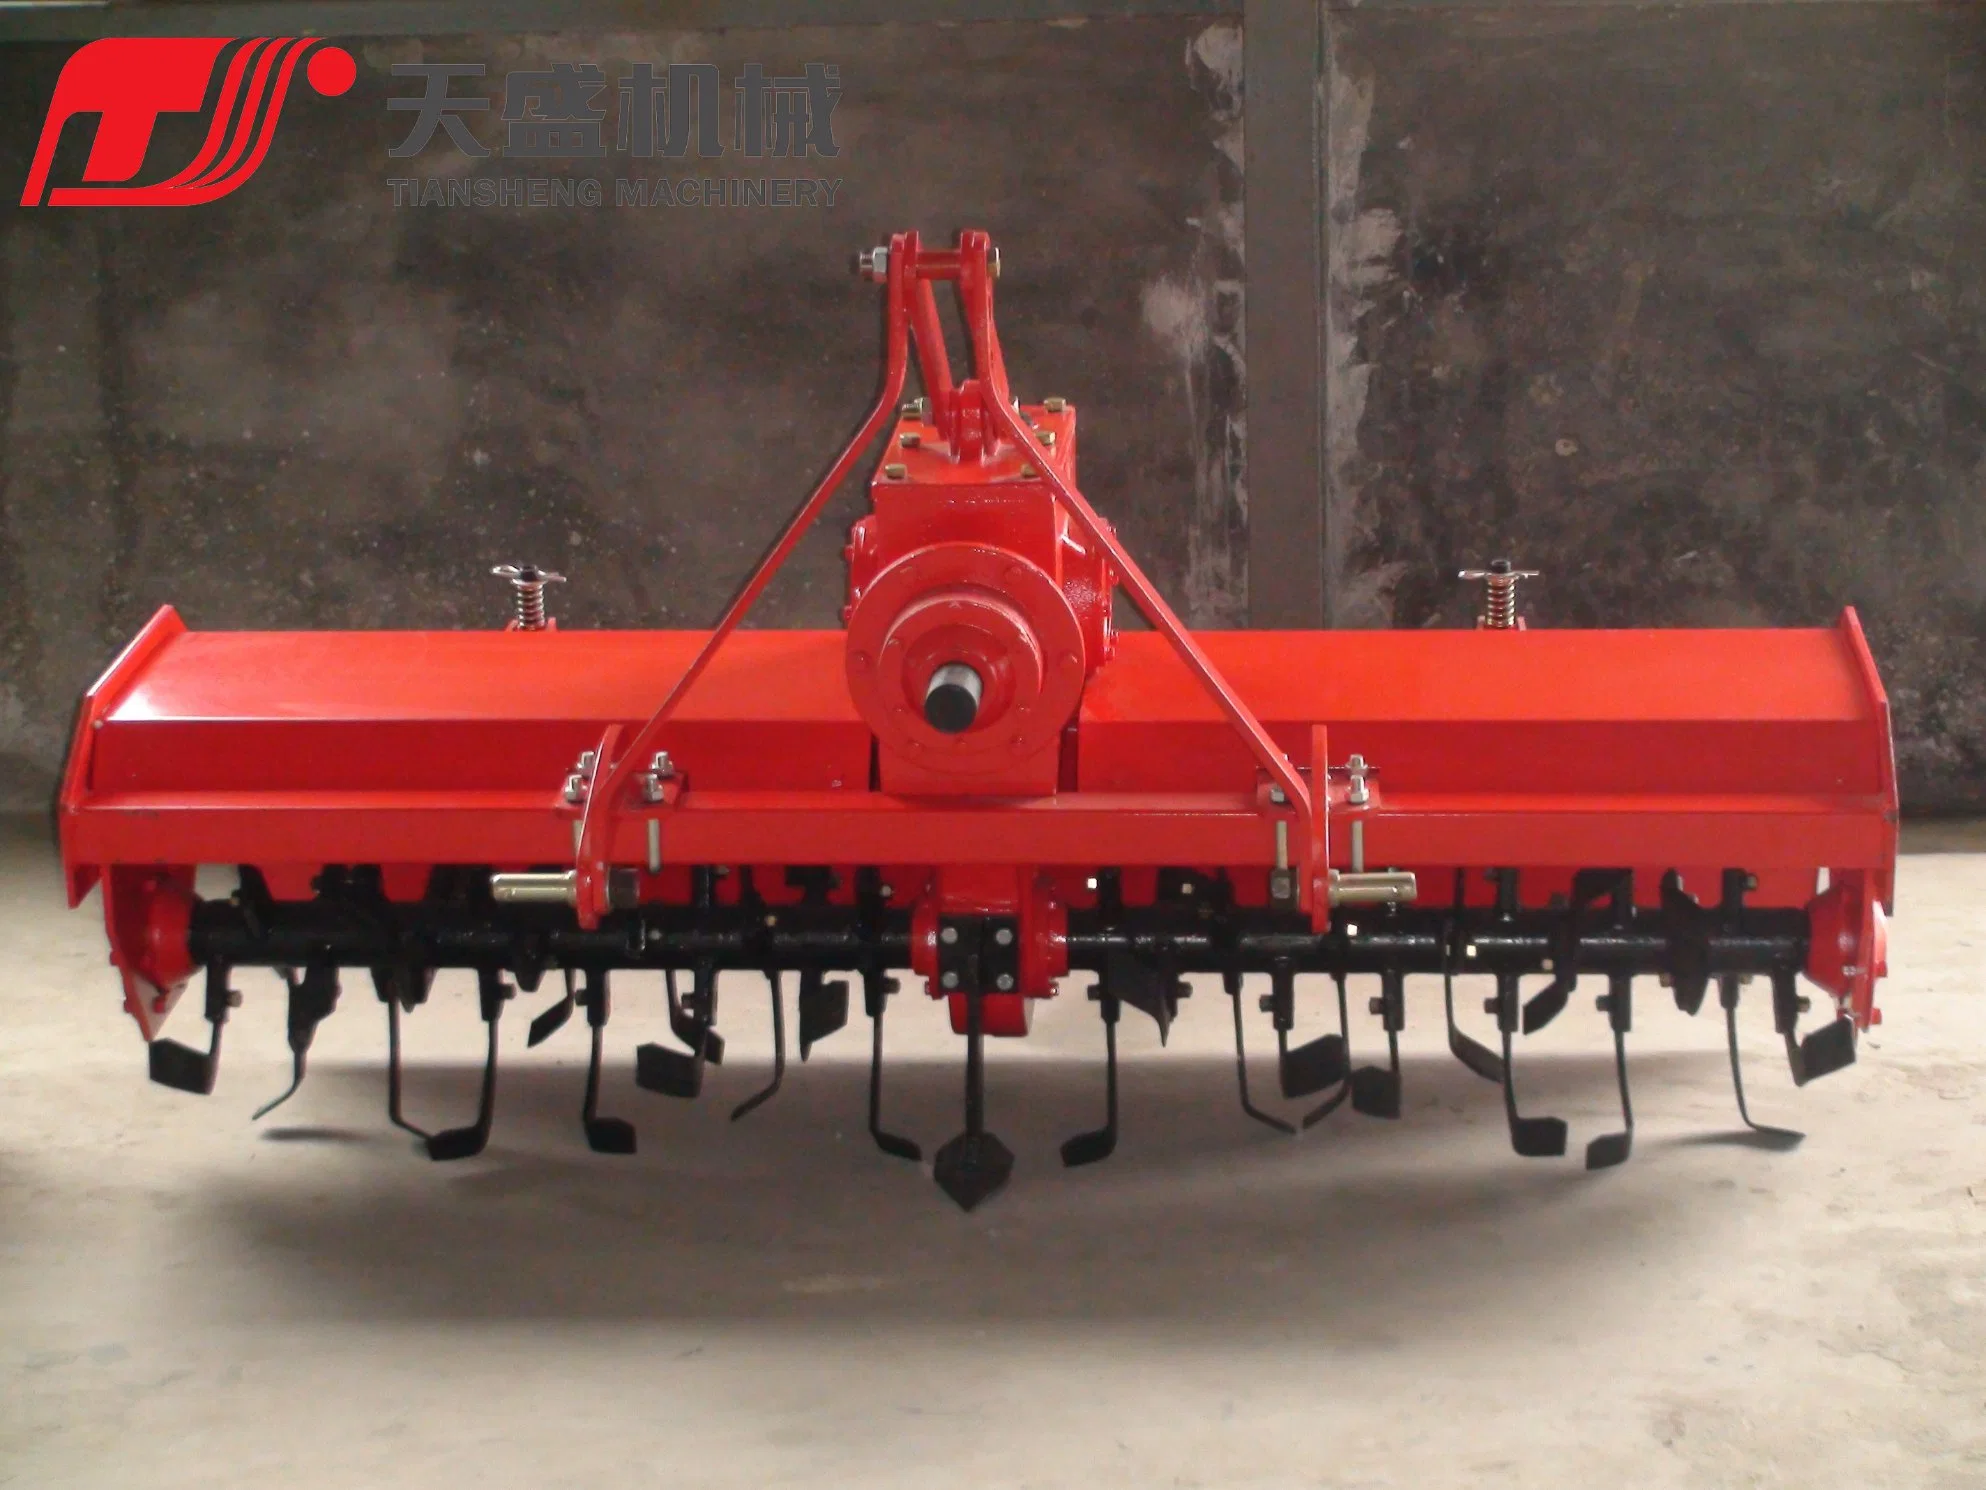 De nouvelles machines agricoles montés sur trois points du tracteur 1gqn timon rotatives séries appariées avec tracteur 18-20HP